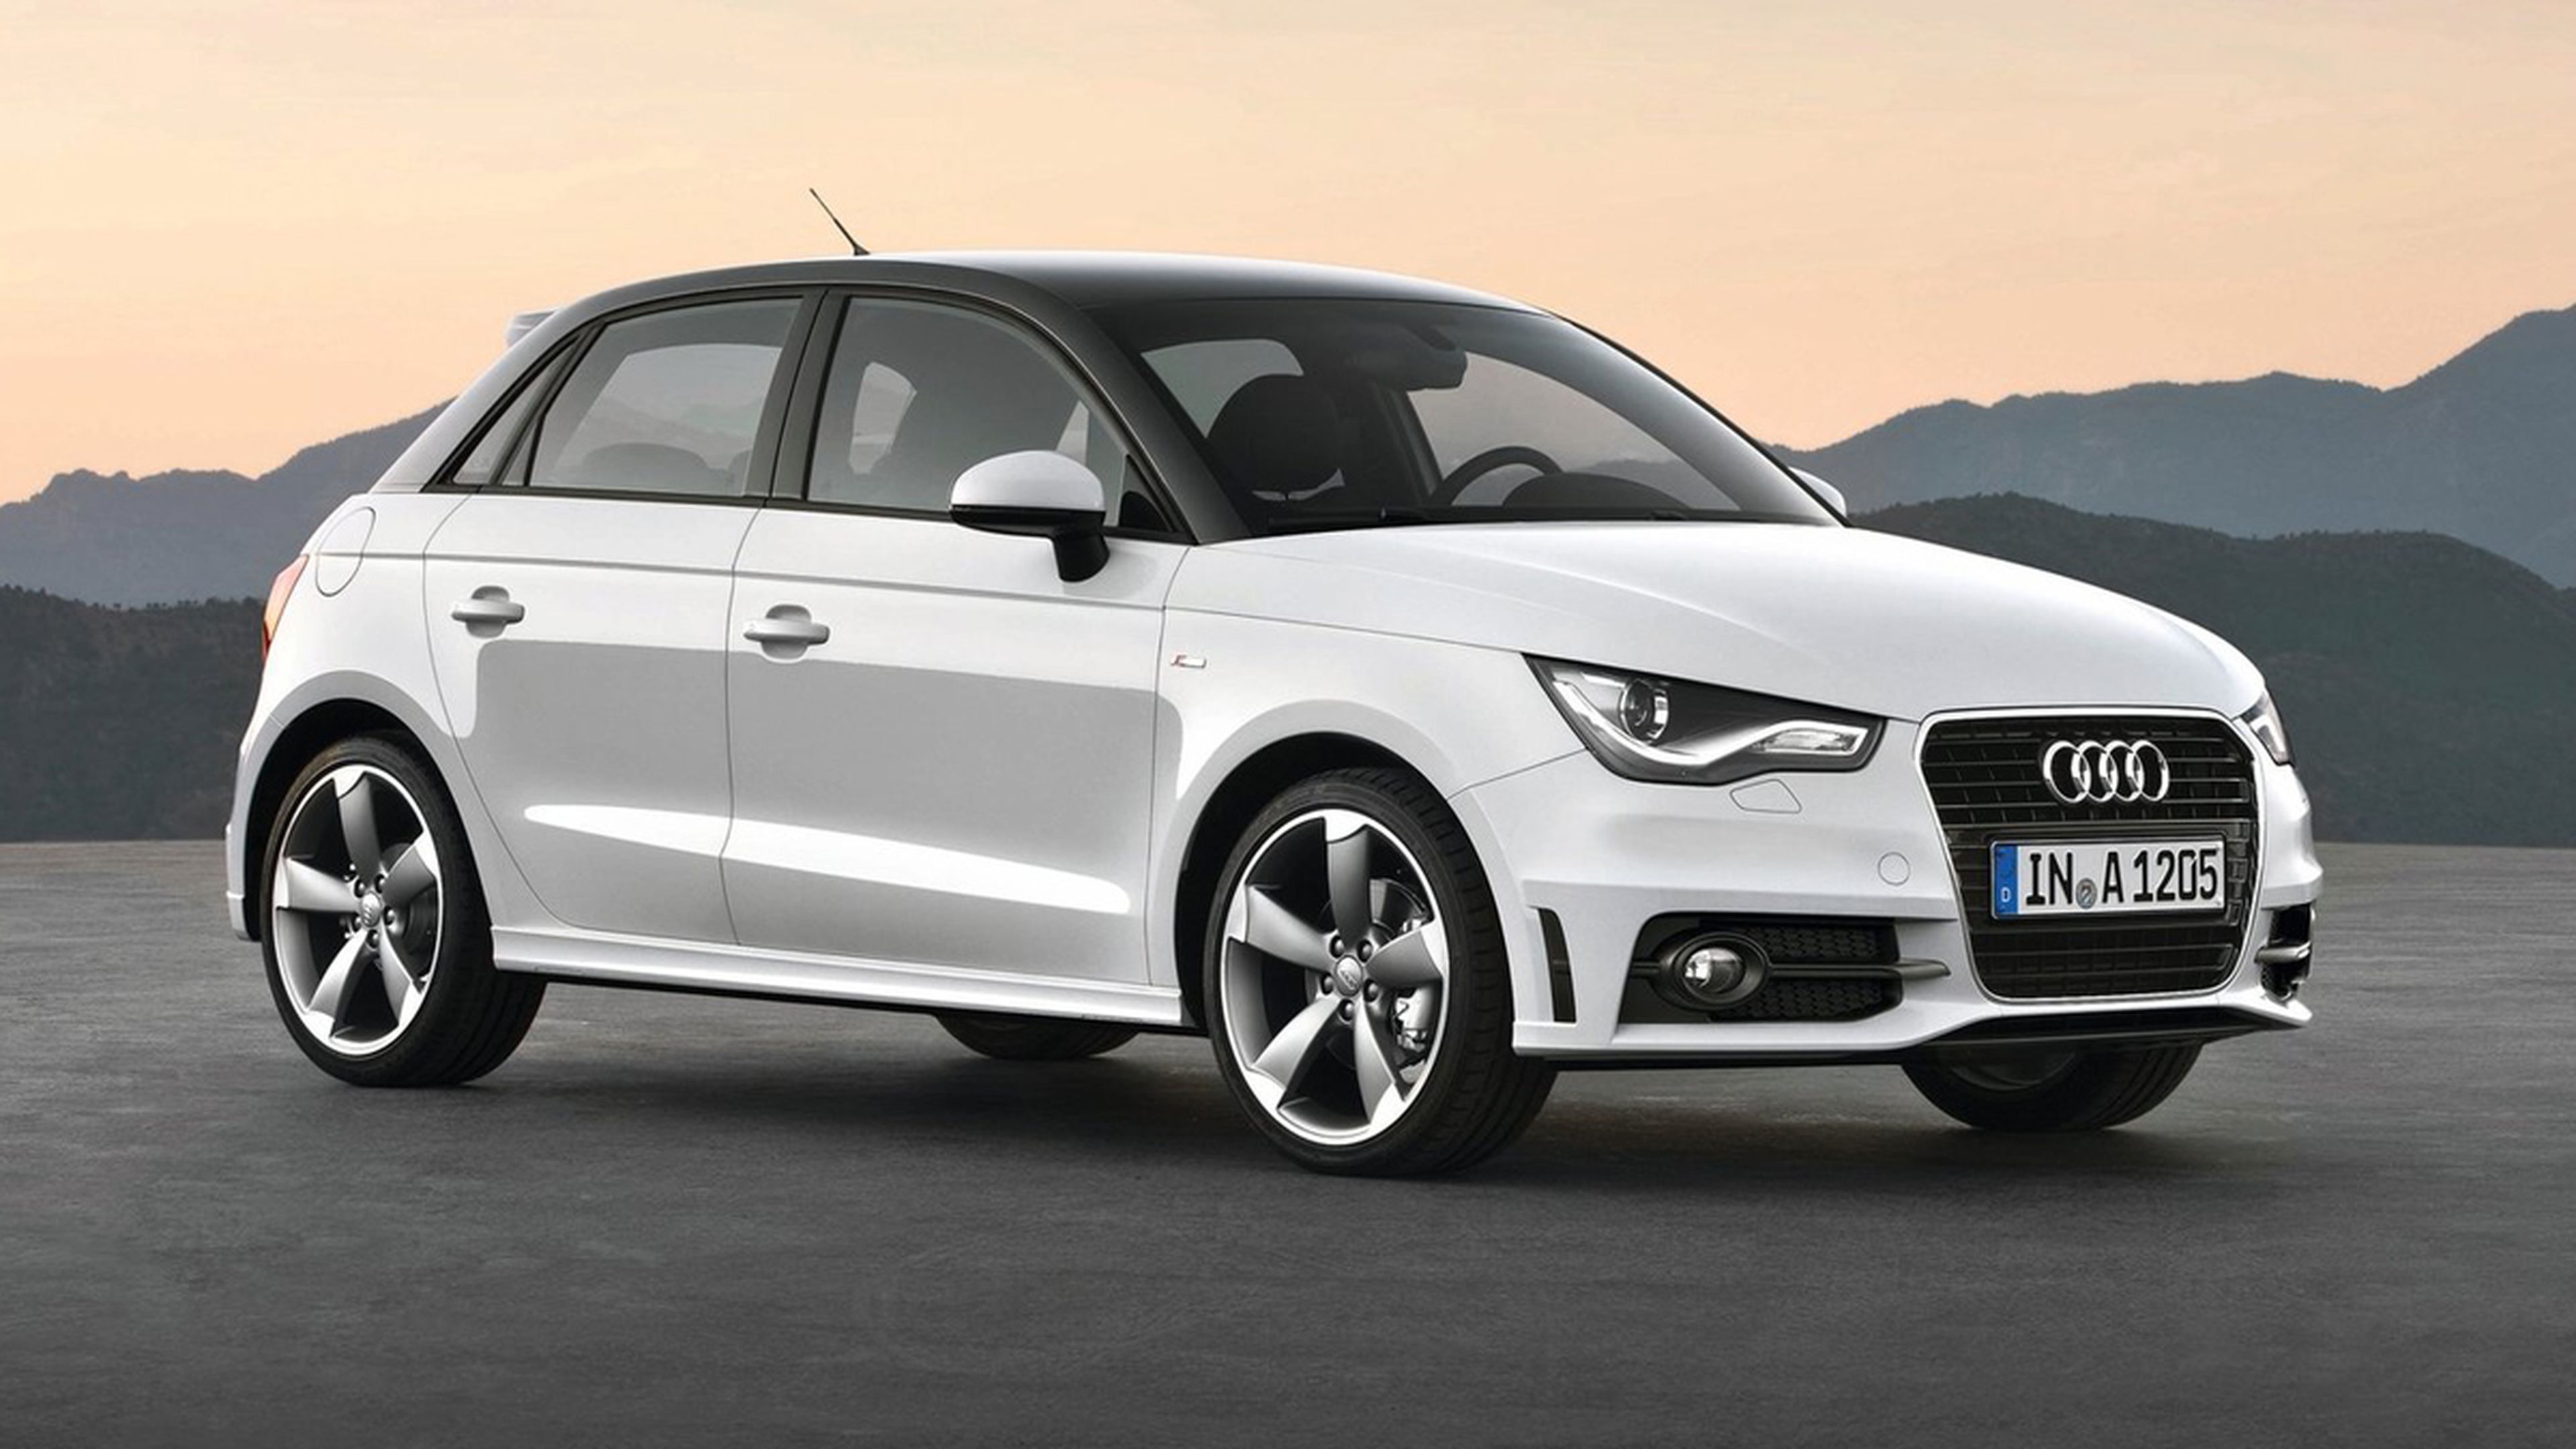 coches-usados-mas-fiables-2015-Audi-A1